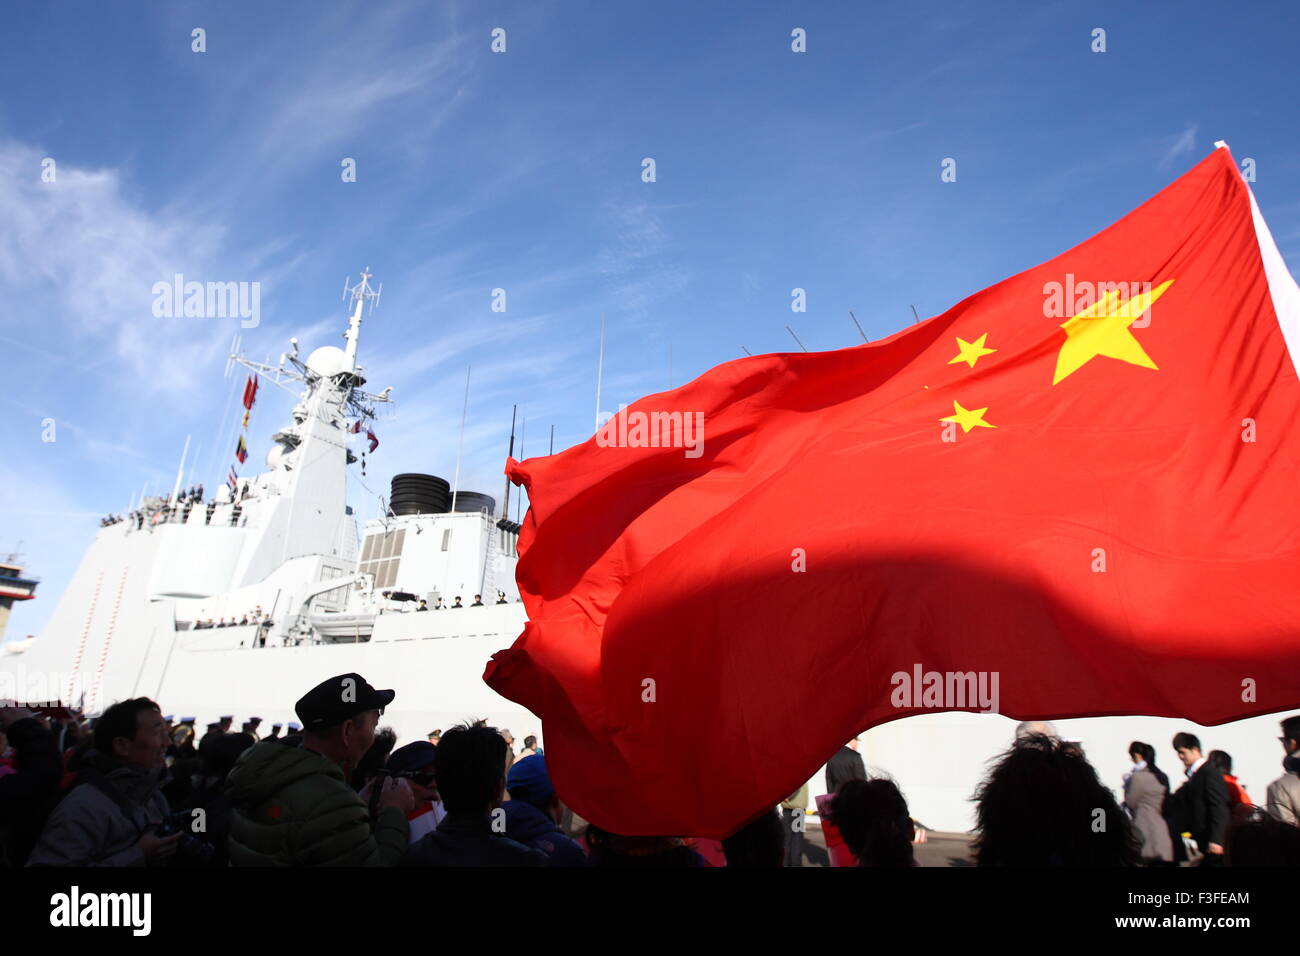 Gdynia, Pologne 7e, octobre 2015 Trois navires de guerre chinois la toute première visite en Pologne. Qingdao, Hangzhou et YIYANG navires s'arrête pendant 5 jours dans le port de la Marine de Gdynia. Les navires appartiennent au 152e Groupe de la marine chinoise. La Pologne et la Chine ont signé un accord de partenariat stratégique en 2011 et ils veulent qu'elle couvre aussi les forces armées. Credit : Michal Fludra/Alamy Live News Banque D'Images